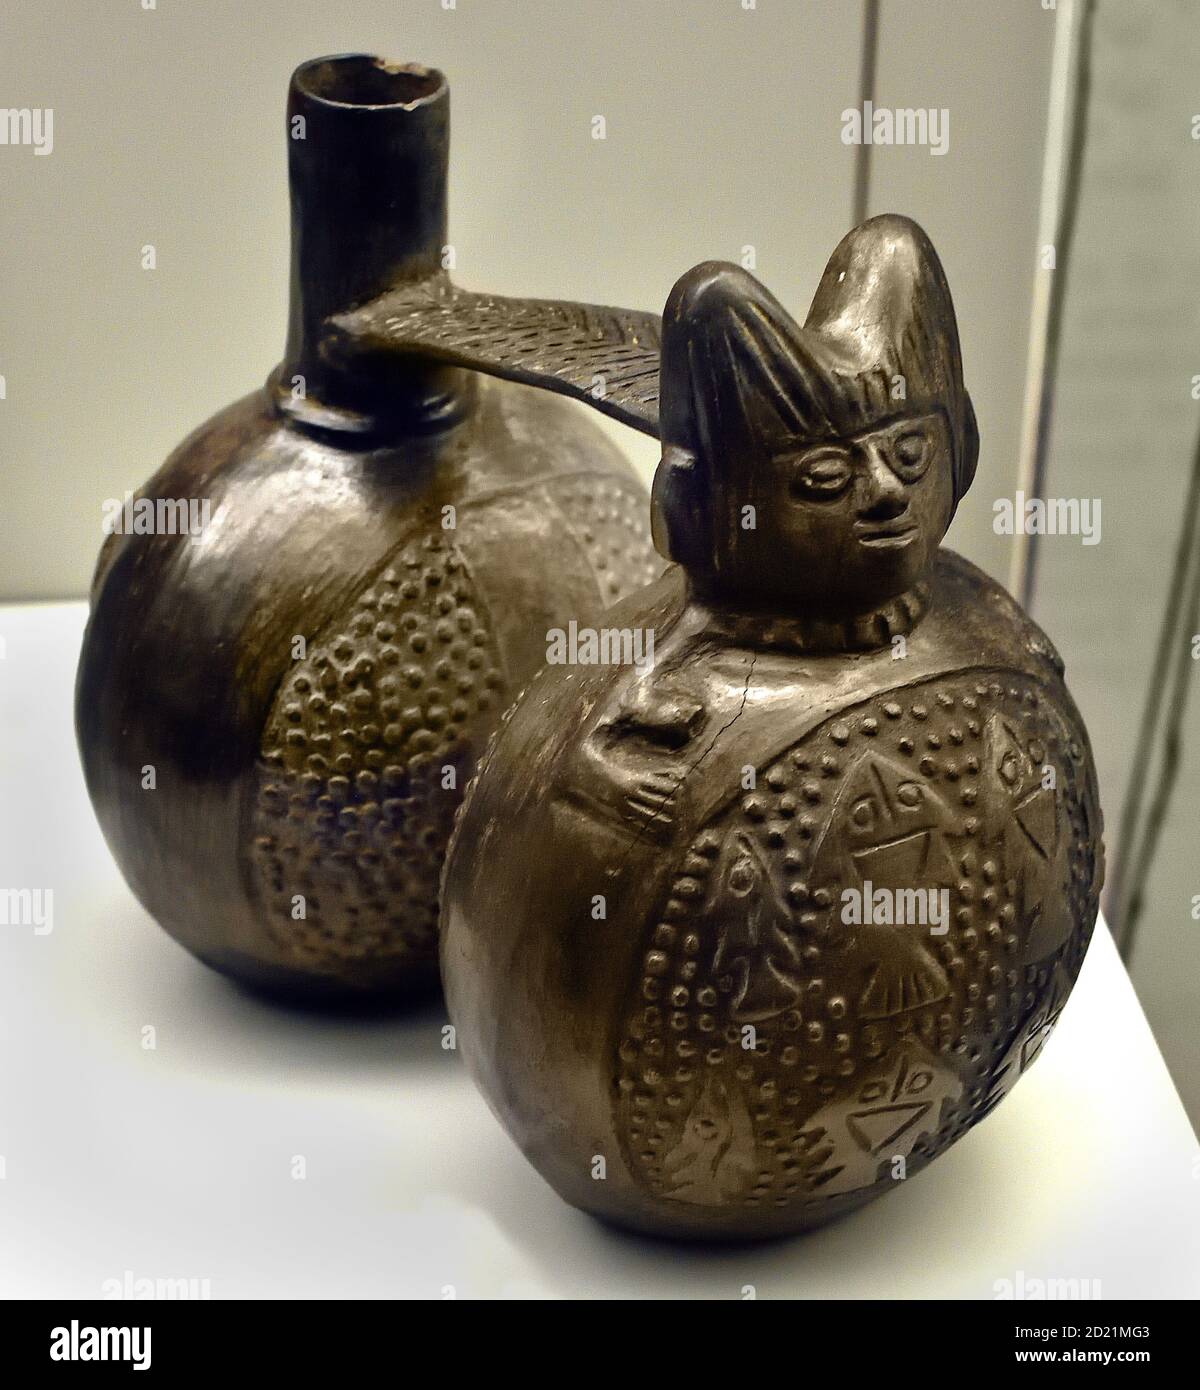 Double vaisseau. Chimu - culture inca. Horizon tardif (1470-1532 AD). Pérou. Péruvien, Amérique, américain, ( cultures et civilisations pré-colombiennes ) Banque D'Images